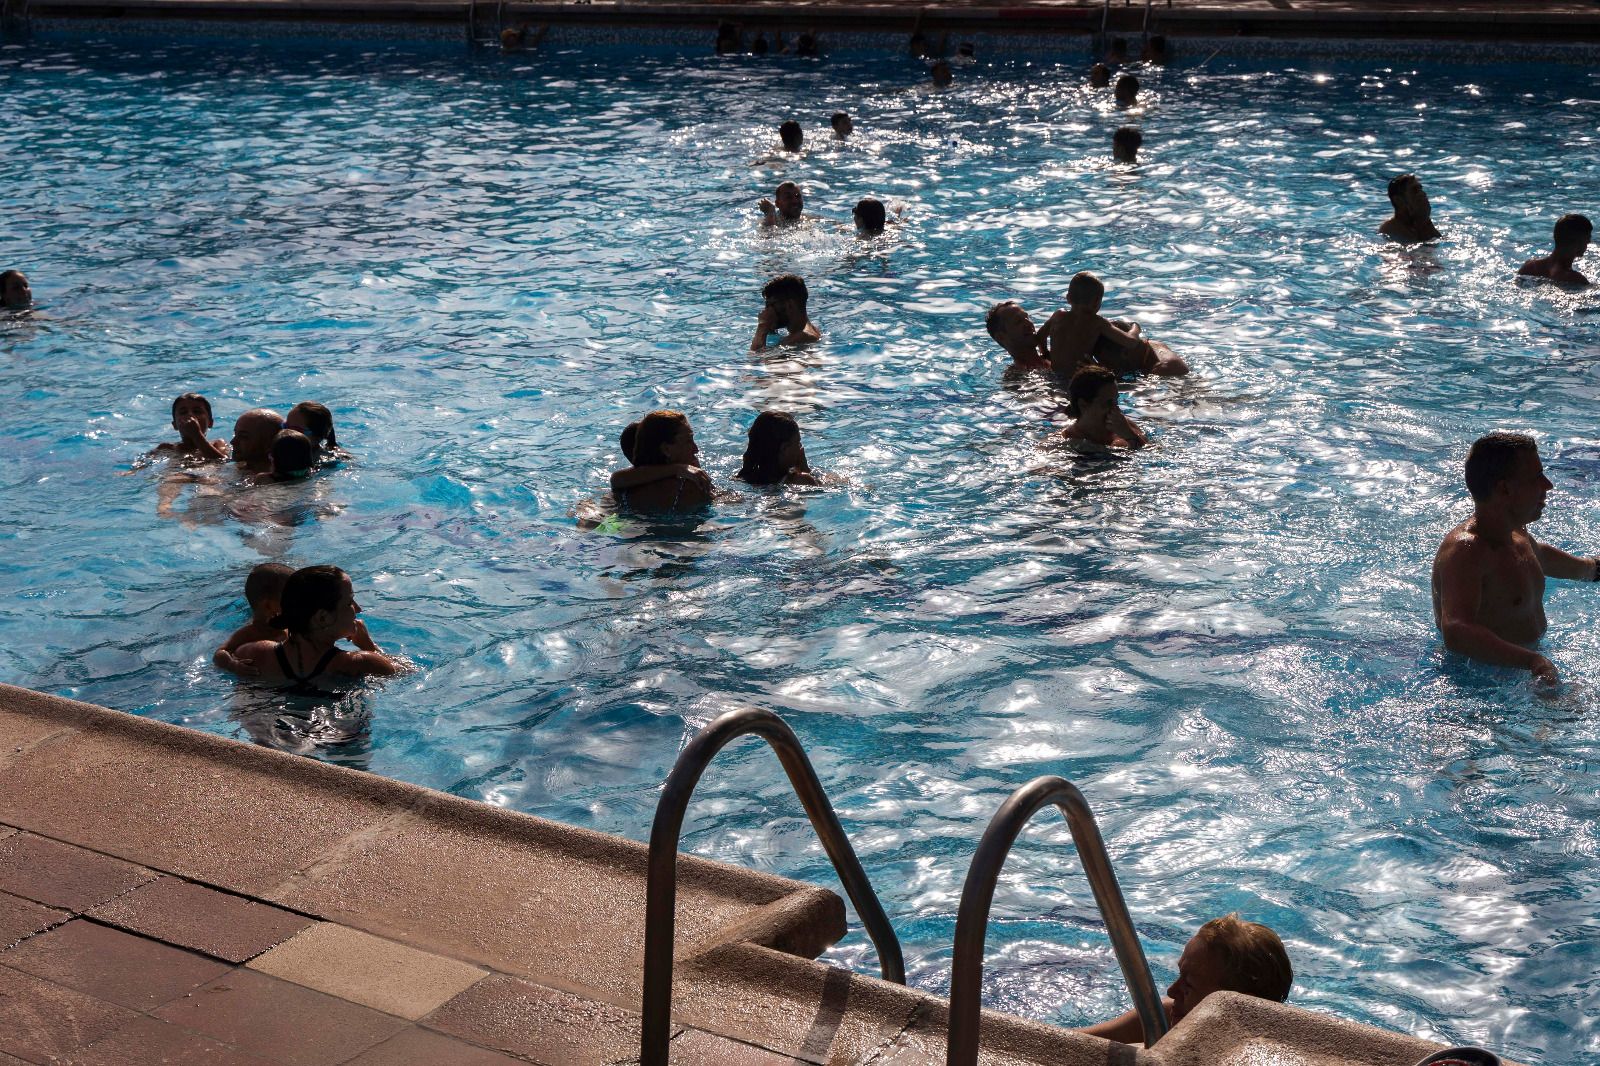 Primer día de piscina gratuita en Silla por la ola de calor